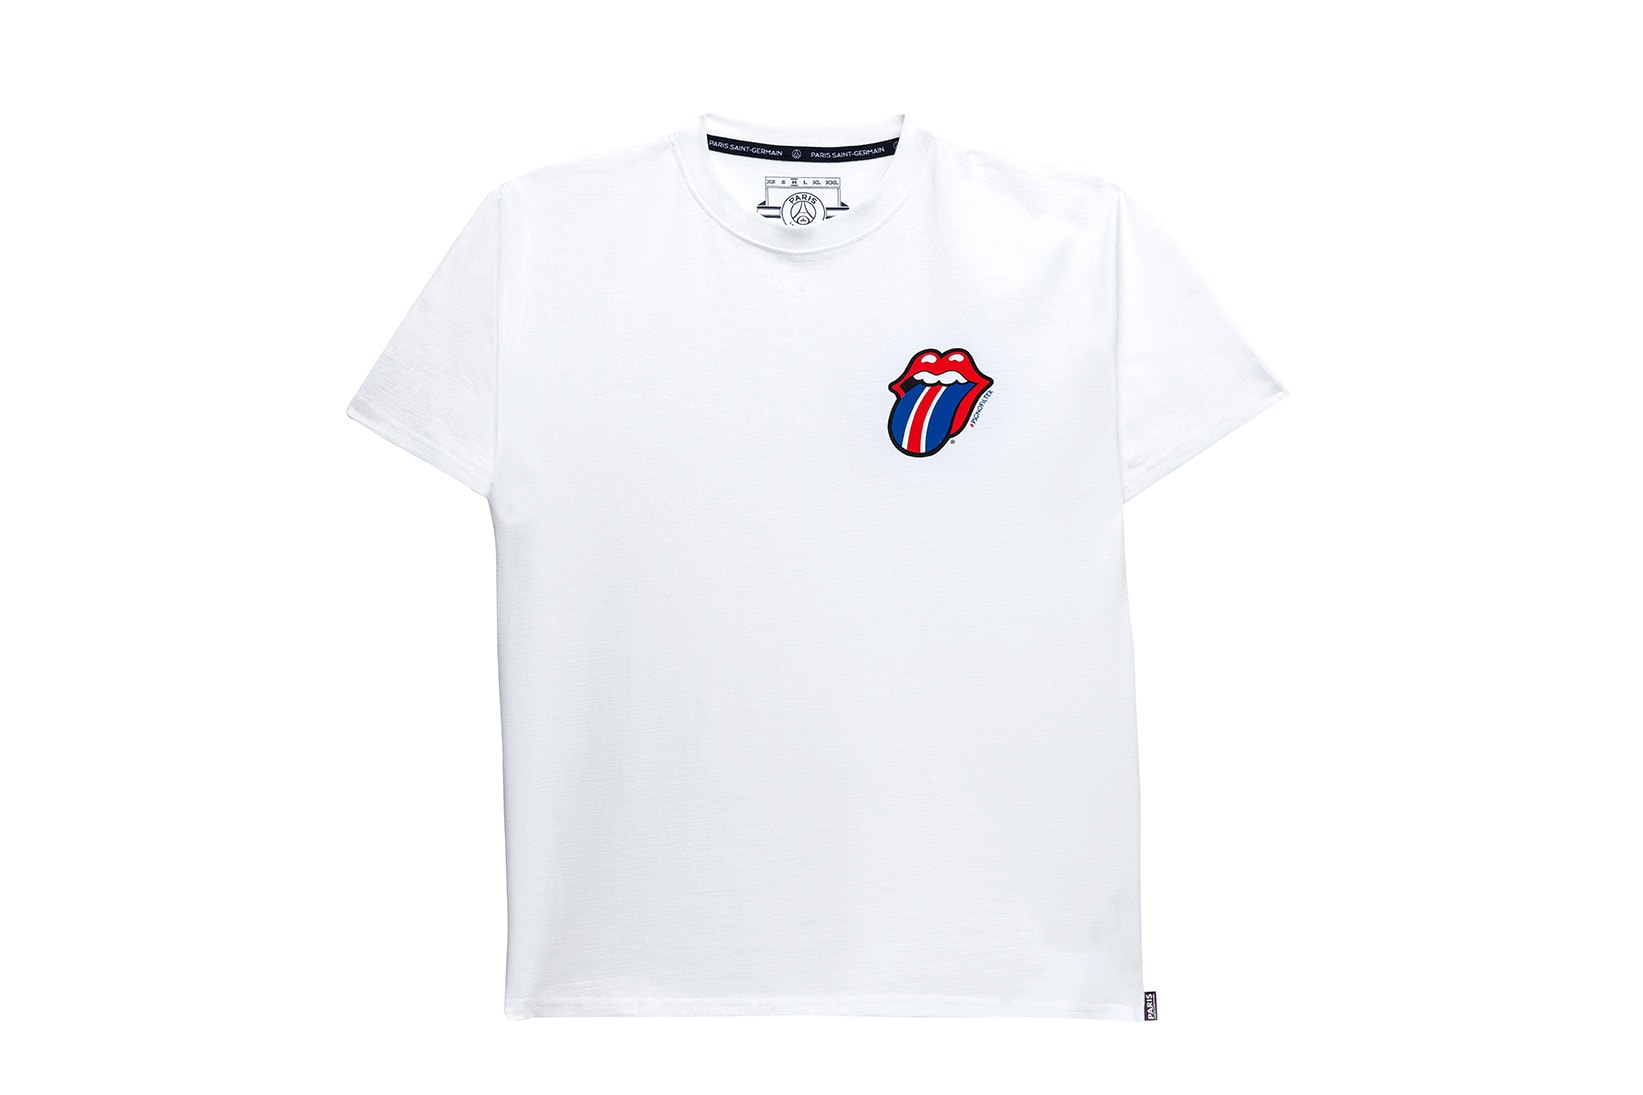 Rolling Stones x Paris Saint-Germain x colette | Hypebeast